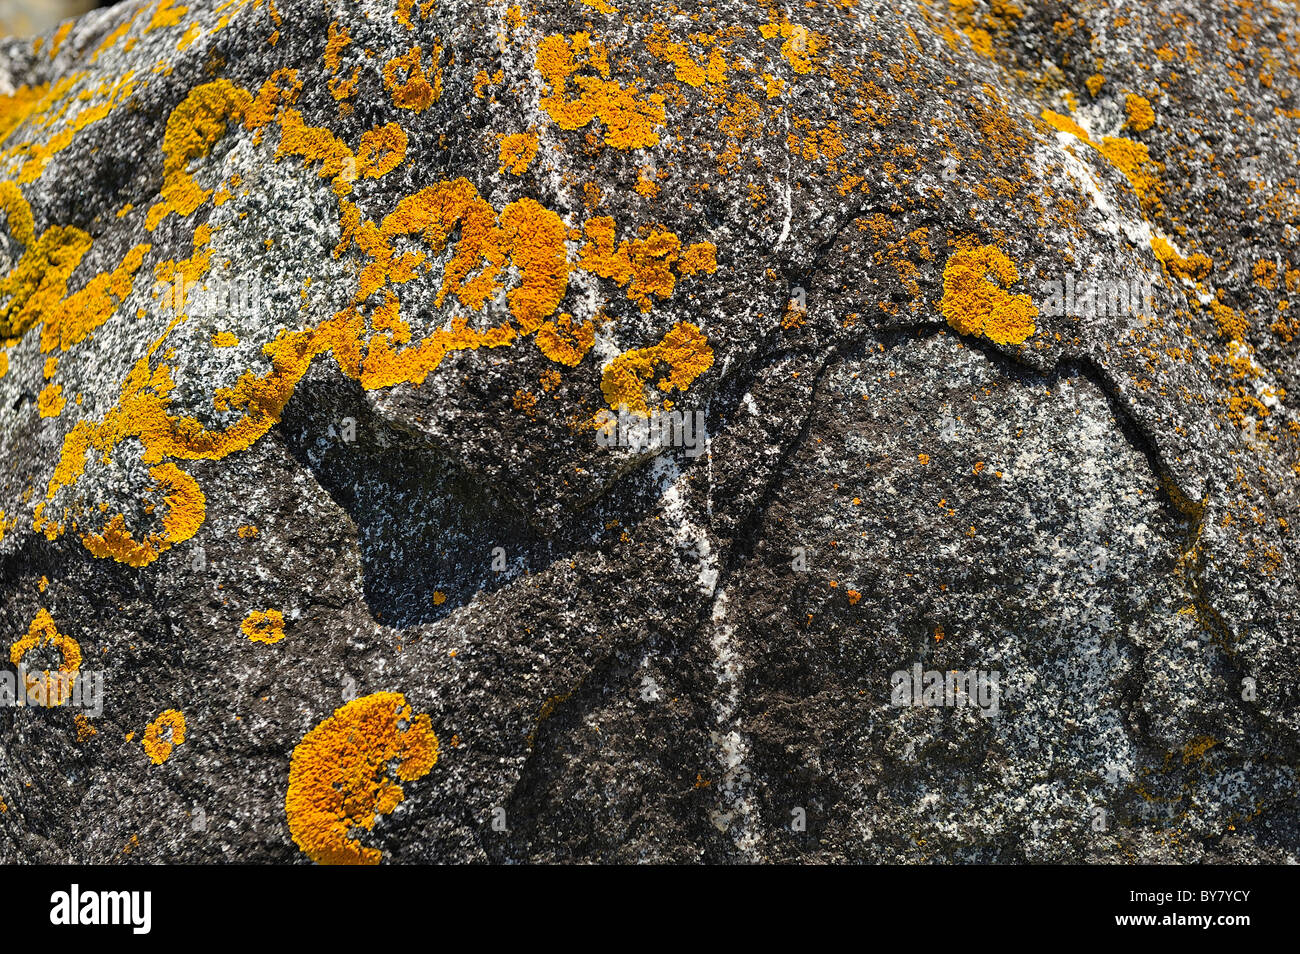 Gelbes Lichen, auch bekannt als Gelbschuppen, Seeunfall-Lichen oder Landlichen, Xanthoria parietina. Wächst auf Felsen in Seenähe in Maine, USA. Stockfoto